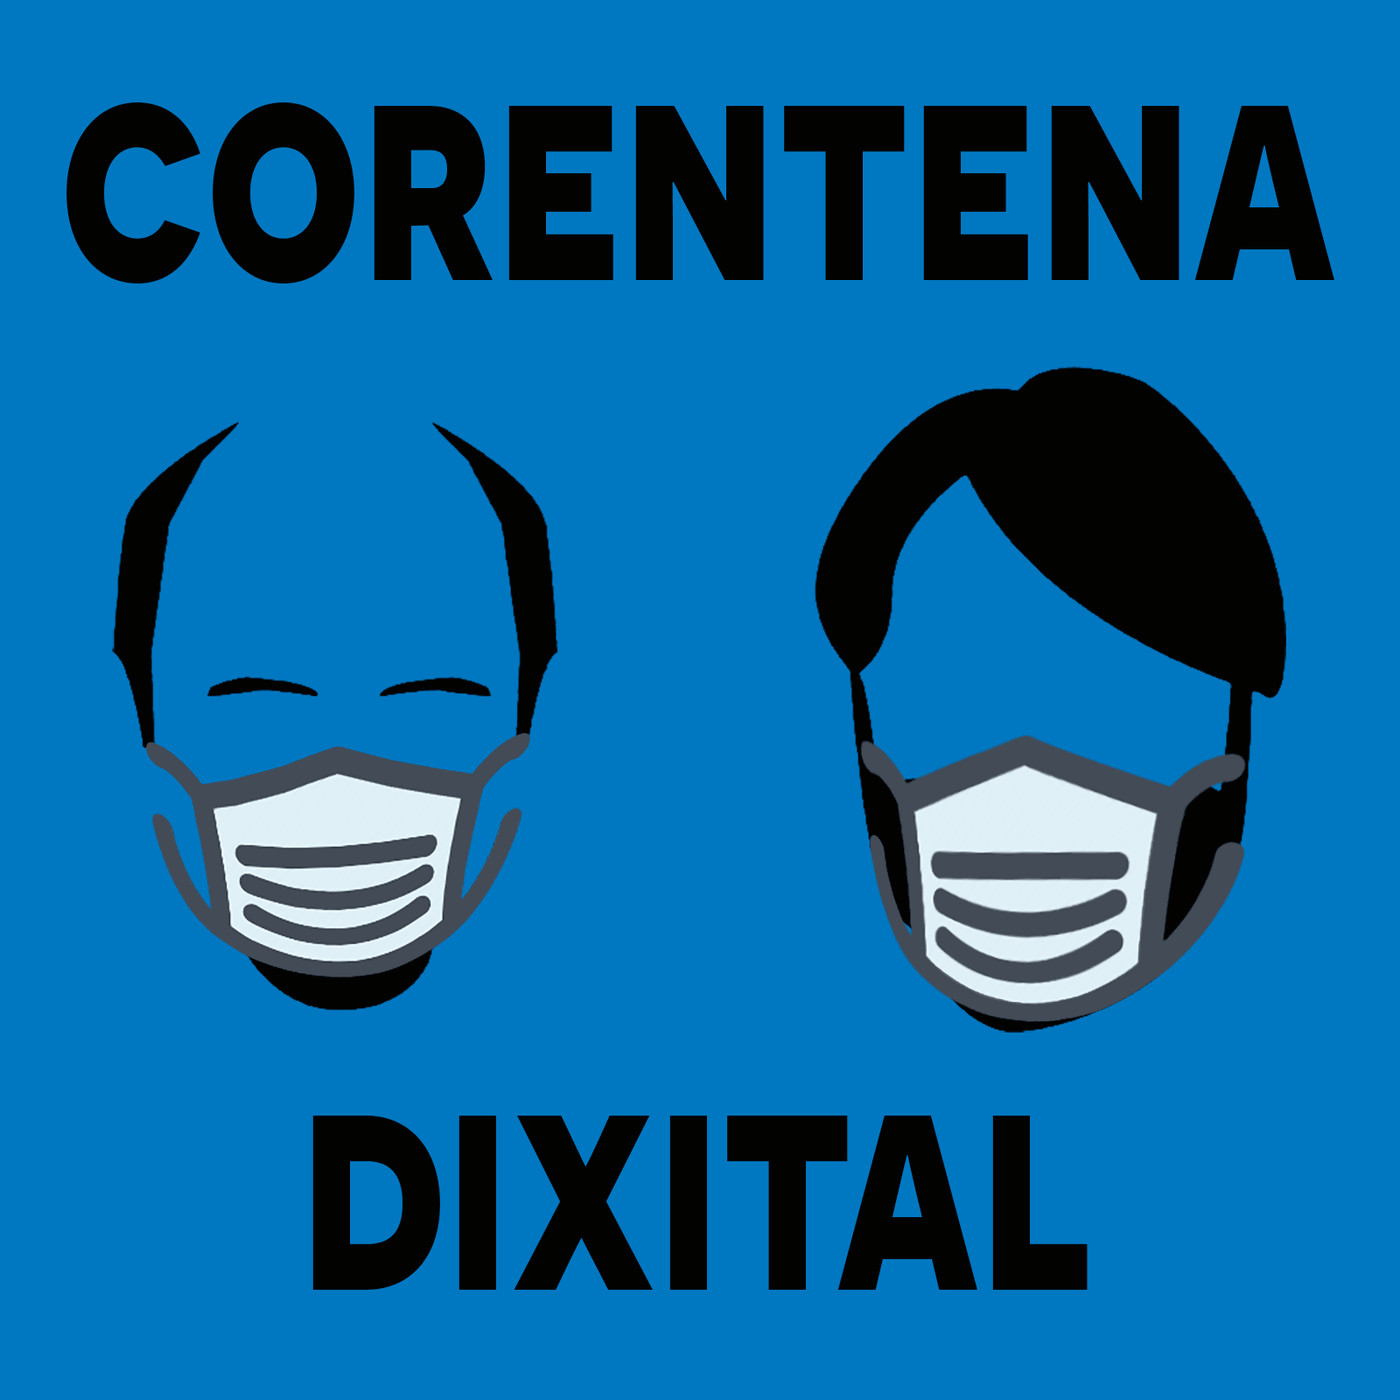 Corentena Dixital